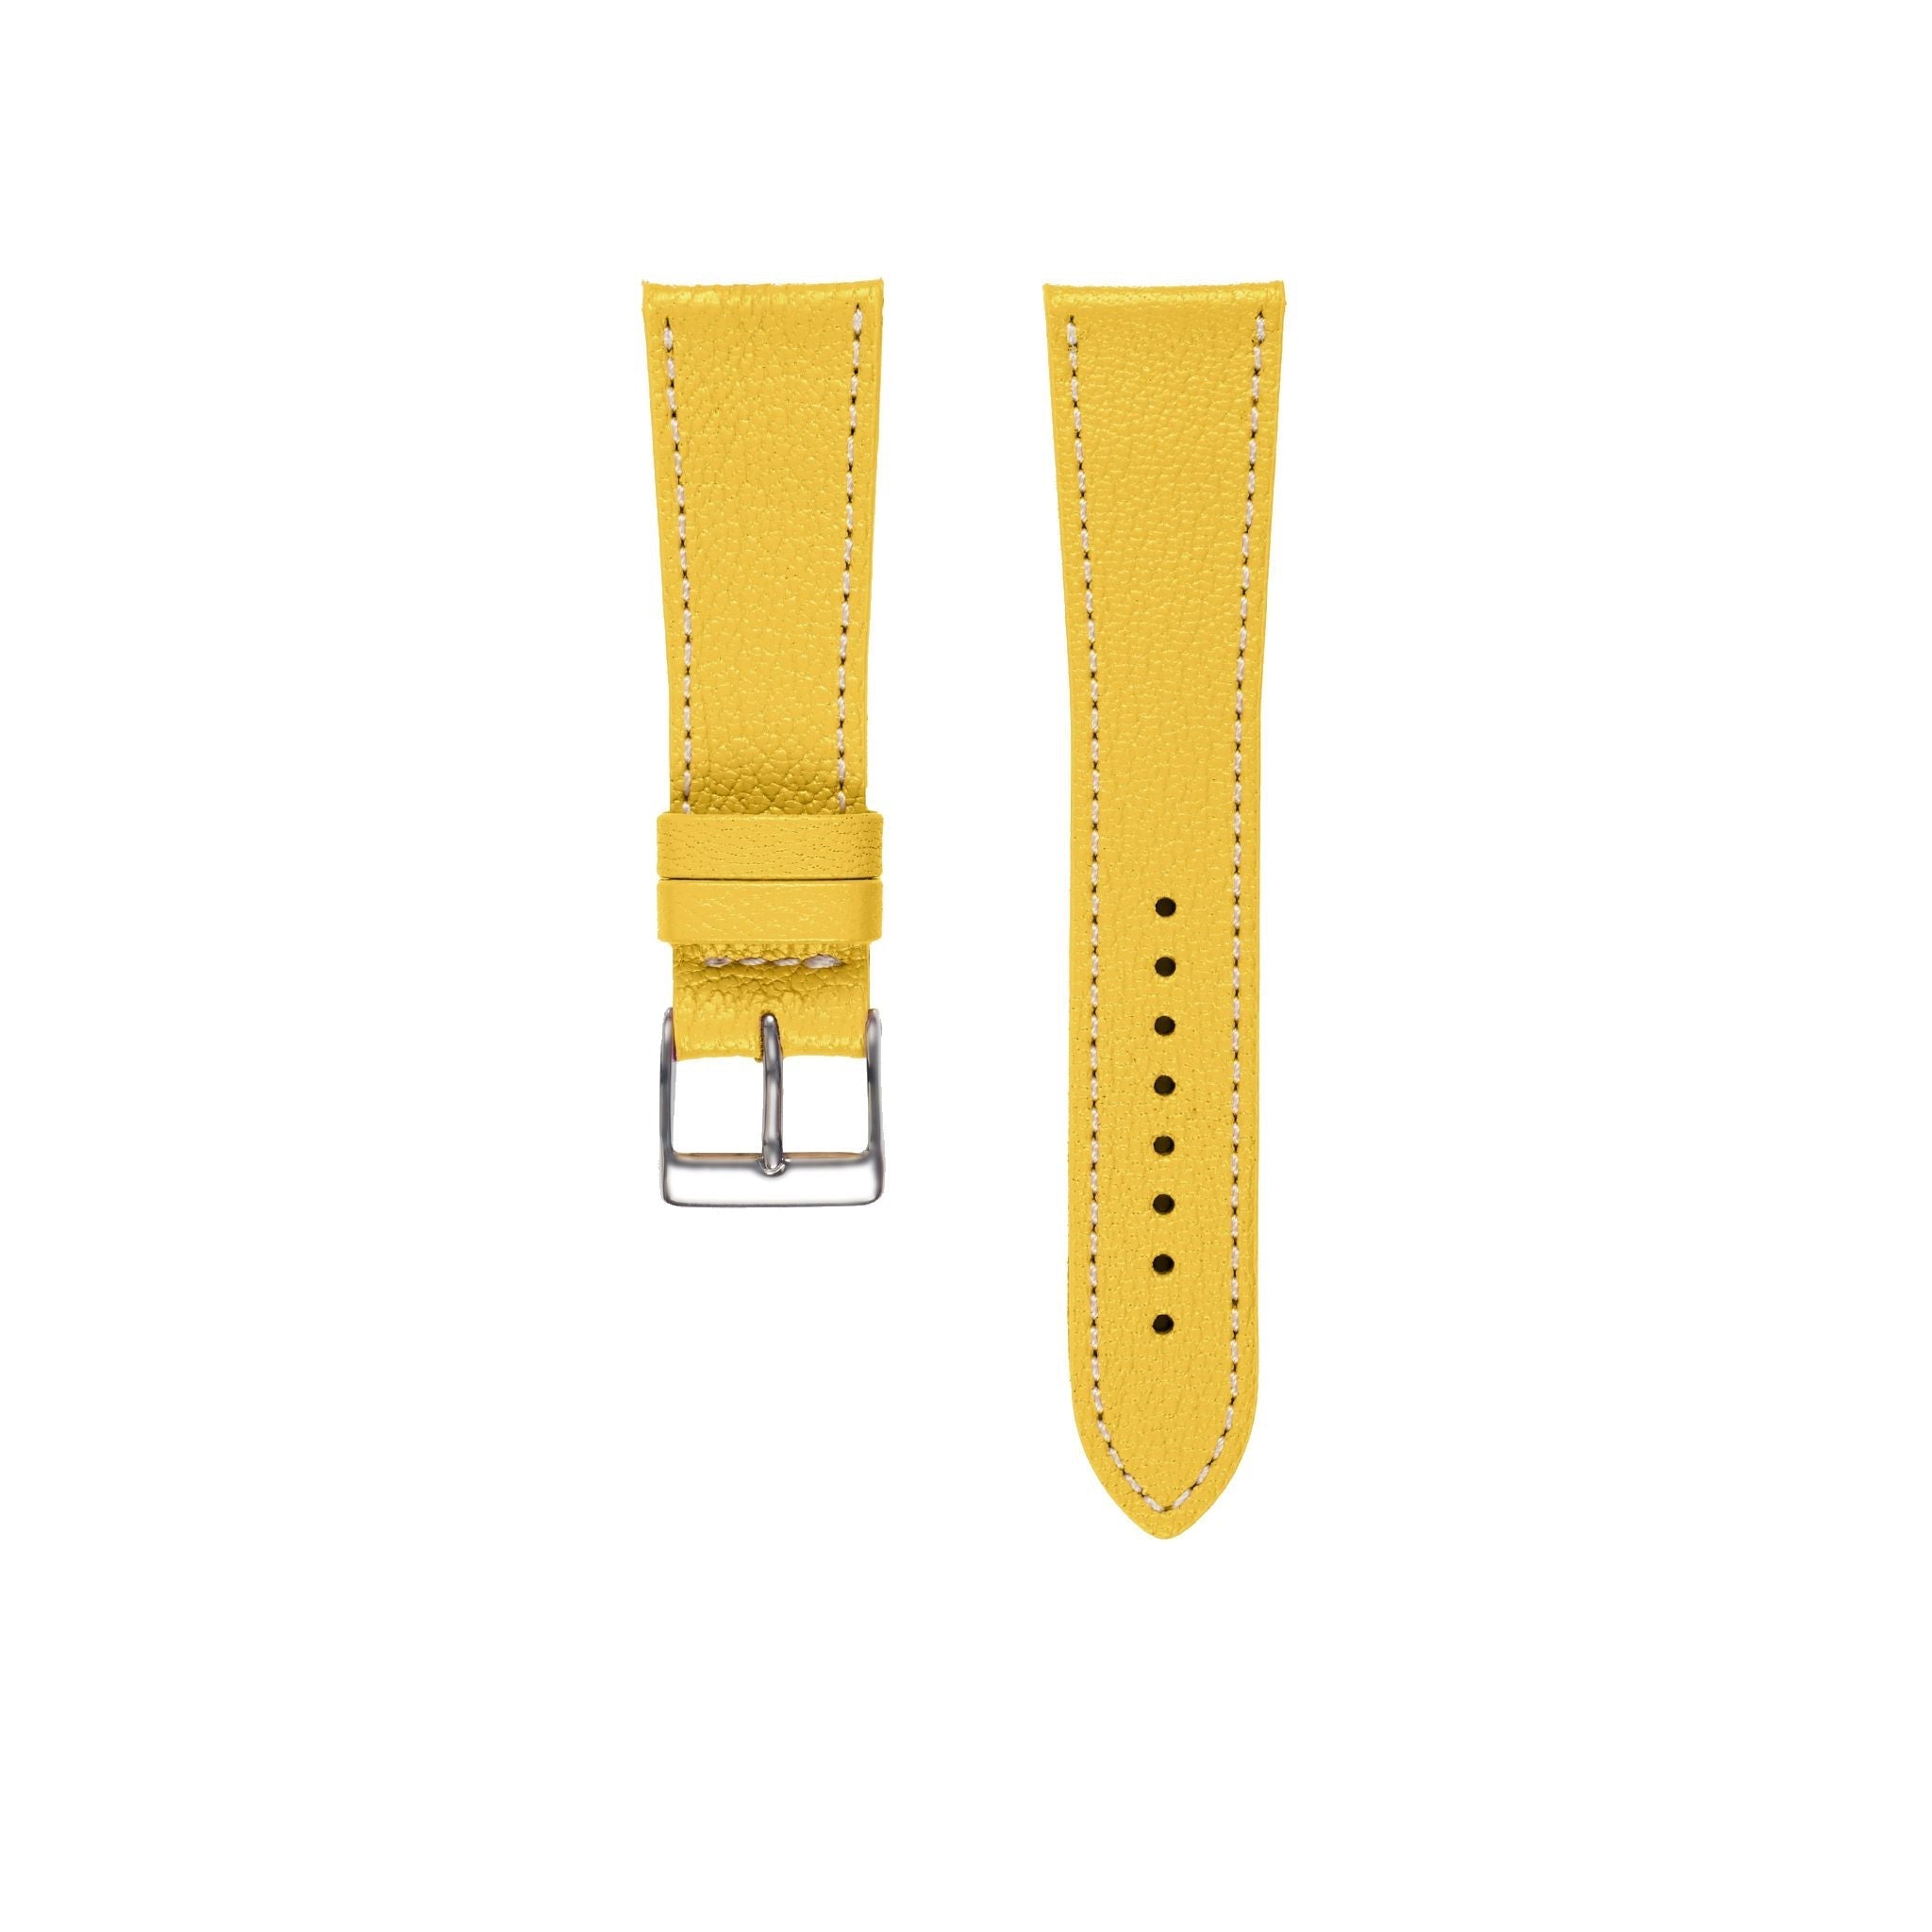 Goat Leather Slim | Armband aus Ziegenleder kompatibel mit Apple Watch-Gelb-BerlinBravo